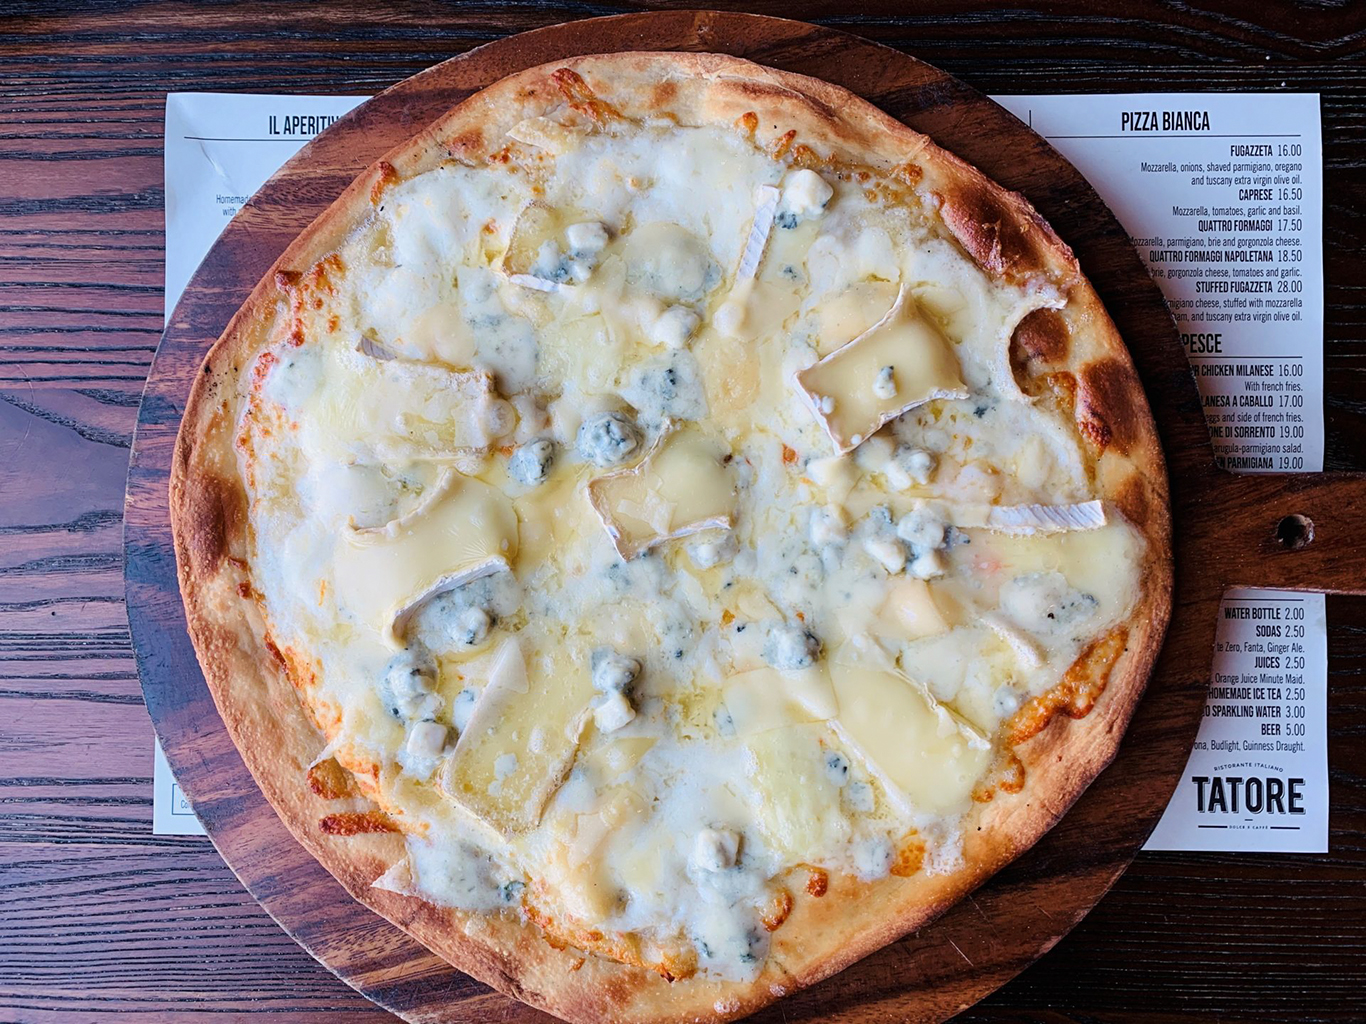 Jedním z nejznámějších druhů pizzy je Quattro formaggi - pizza čtyř sýrů